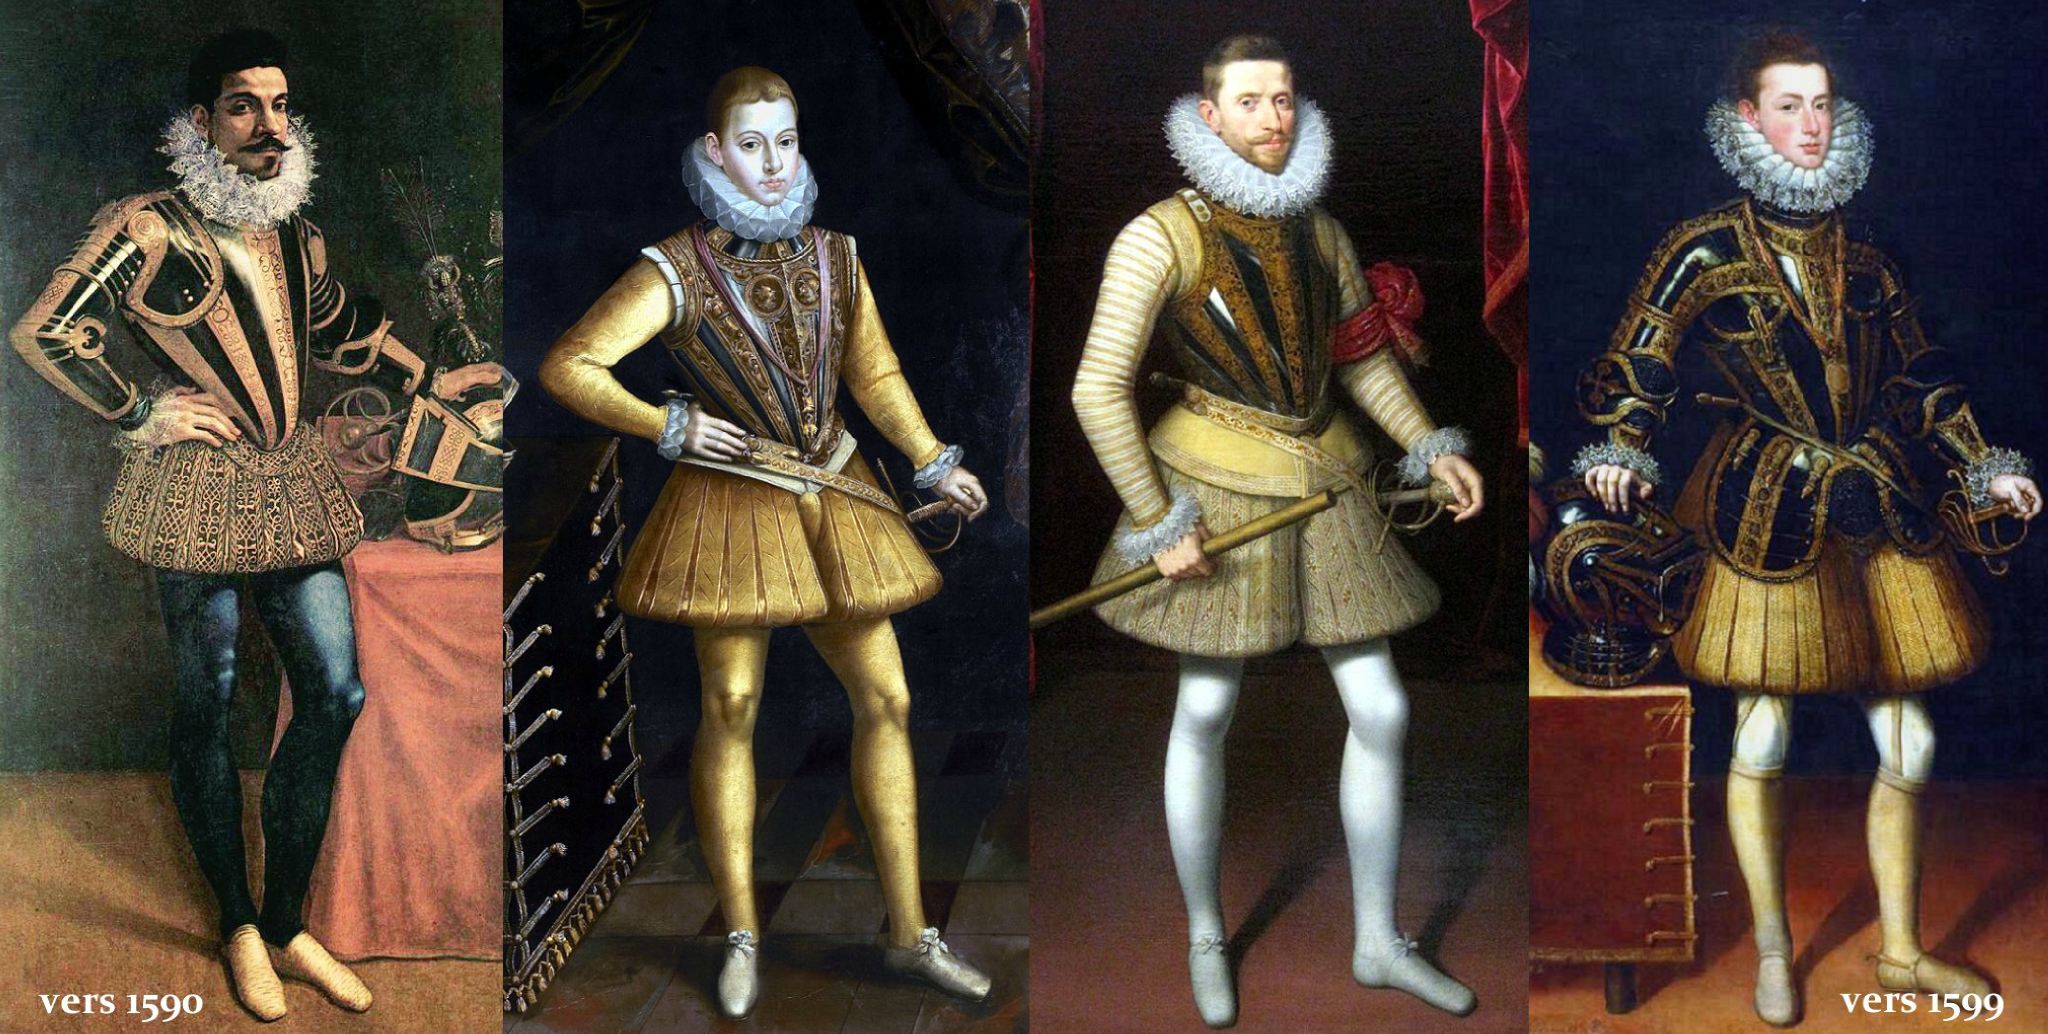 Portraits espagnols 1590-1599